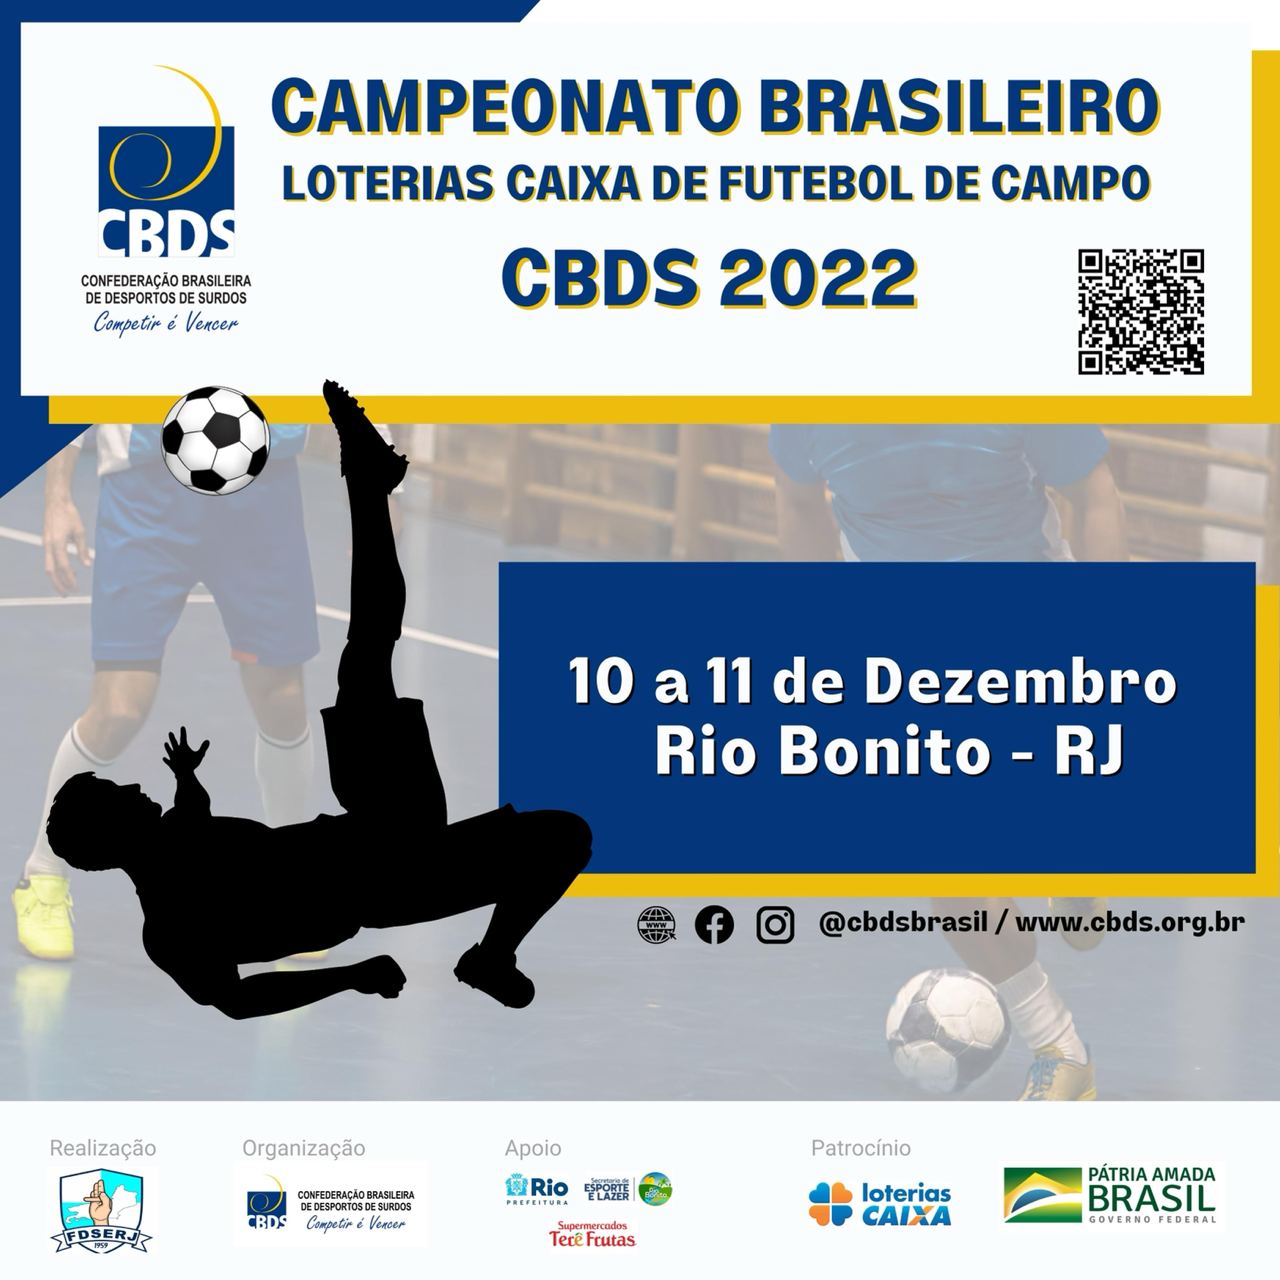 Campeonato Brasileiro Loterias Caixa de Futebol 2022